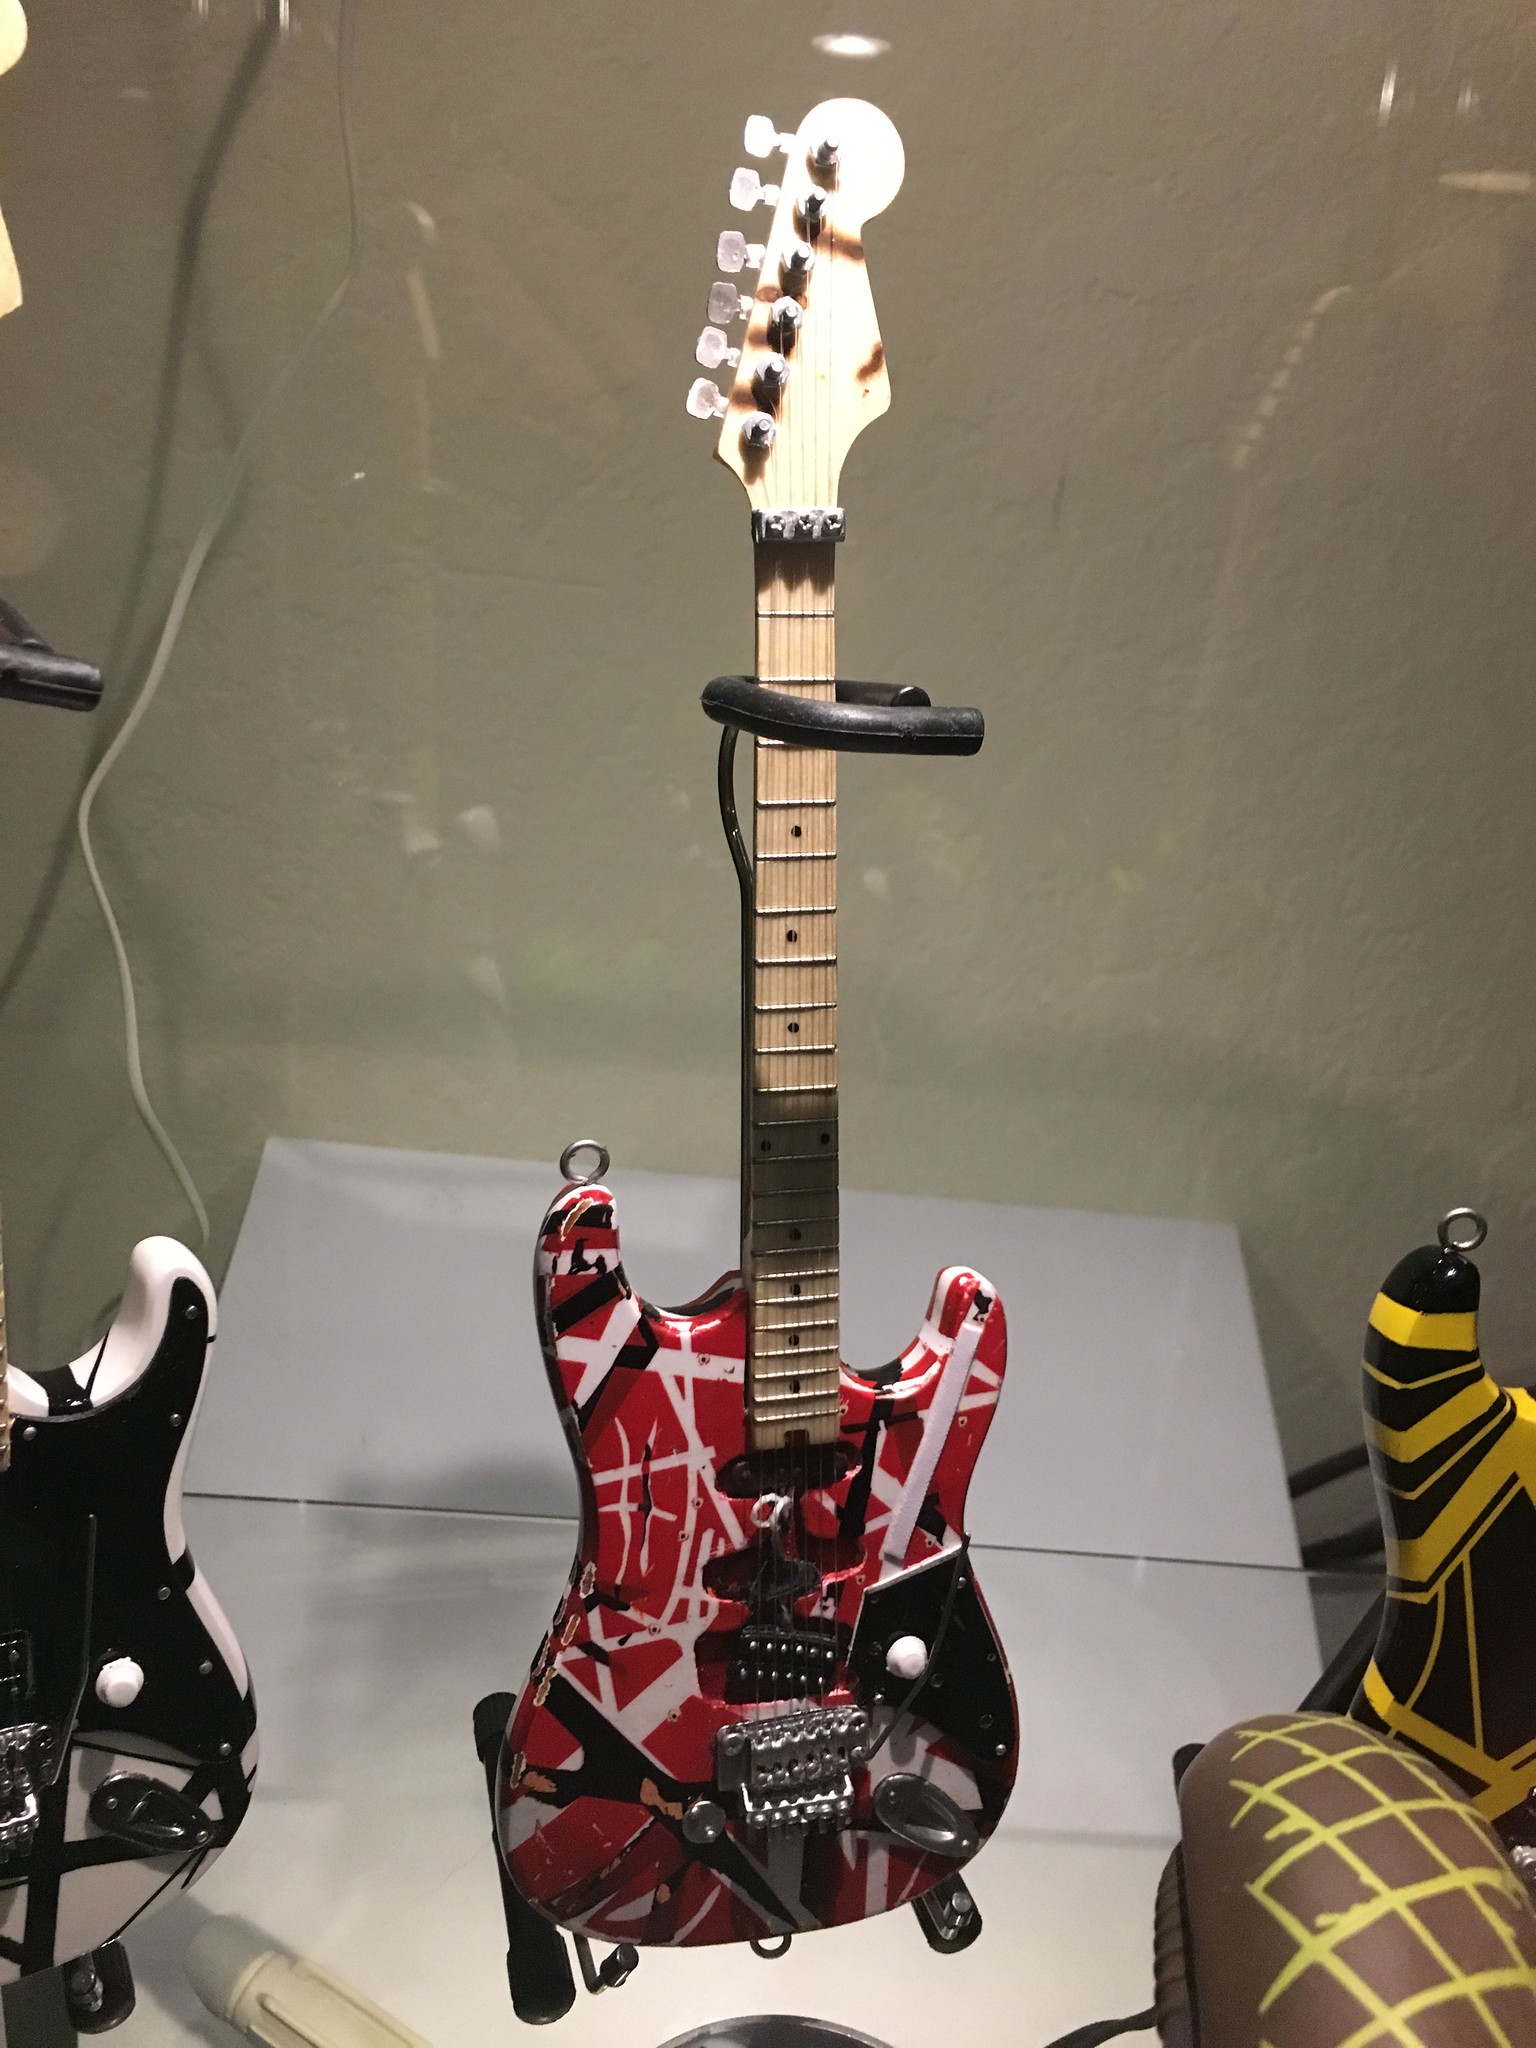 Mini Van Halen "Frankenstine" guitar